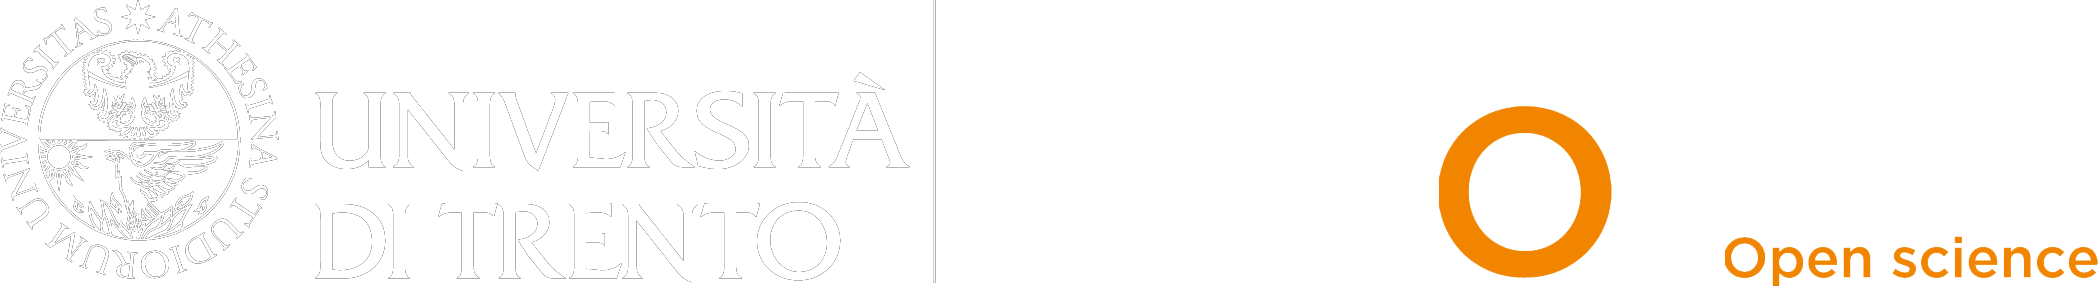 Logo de TESeO - Trento Editions Service for Open science